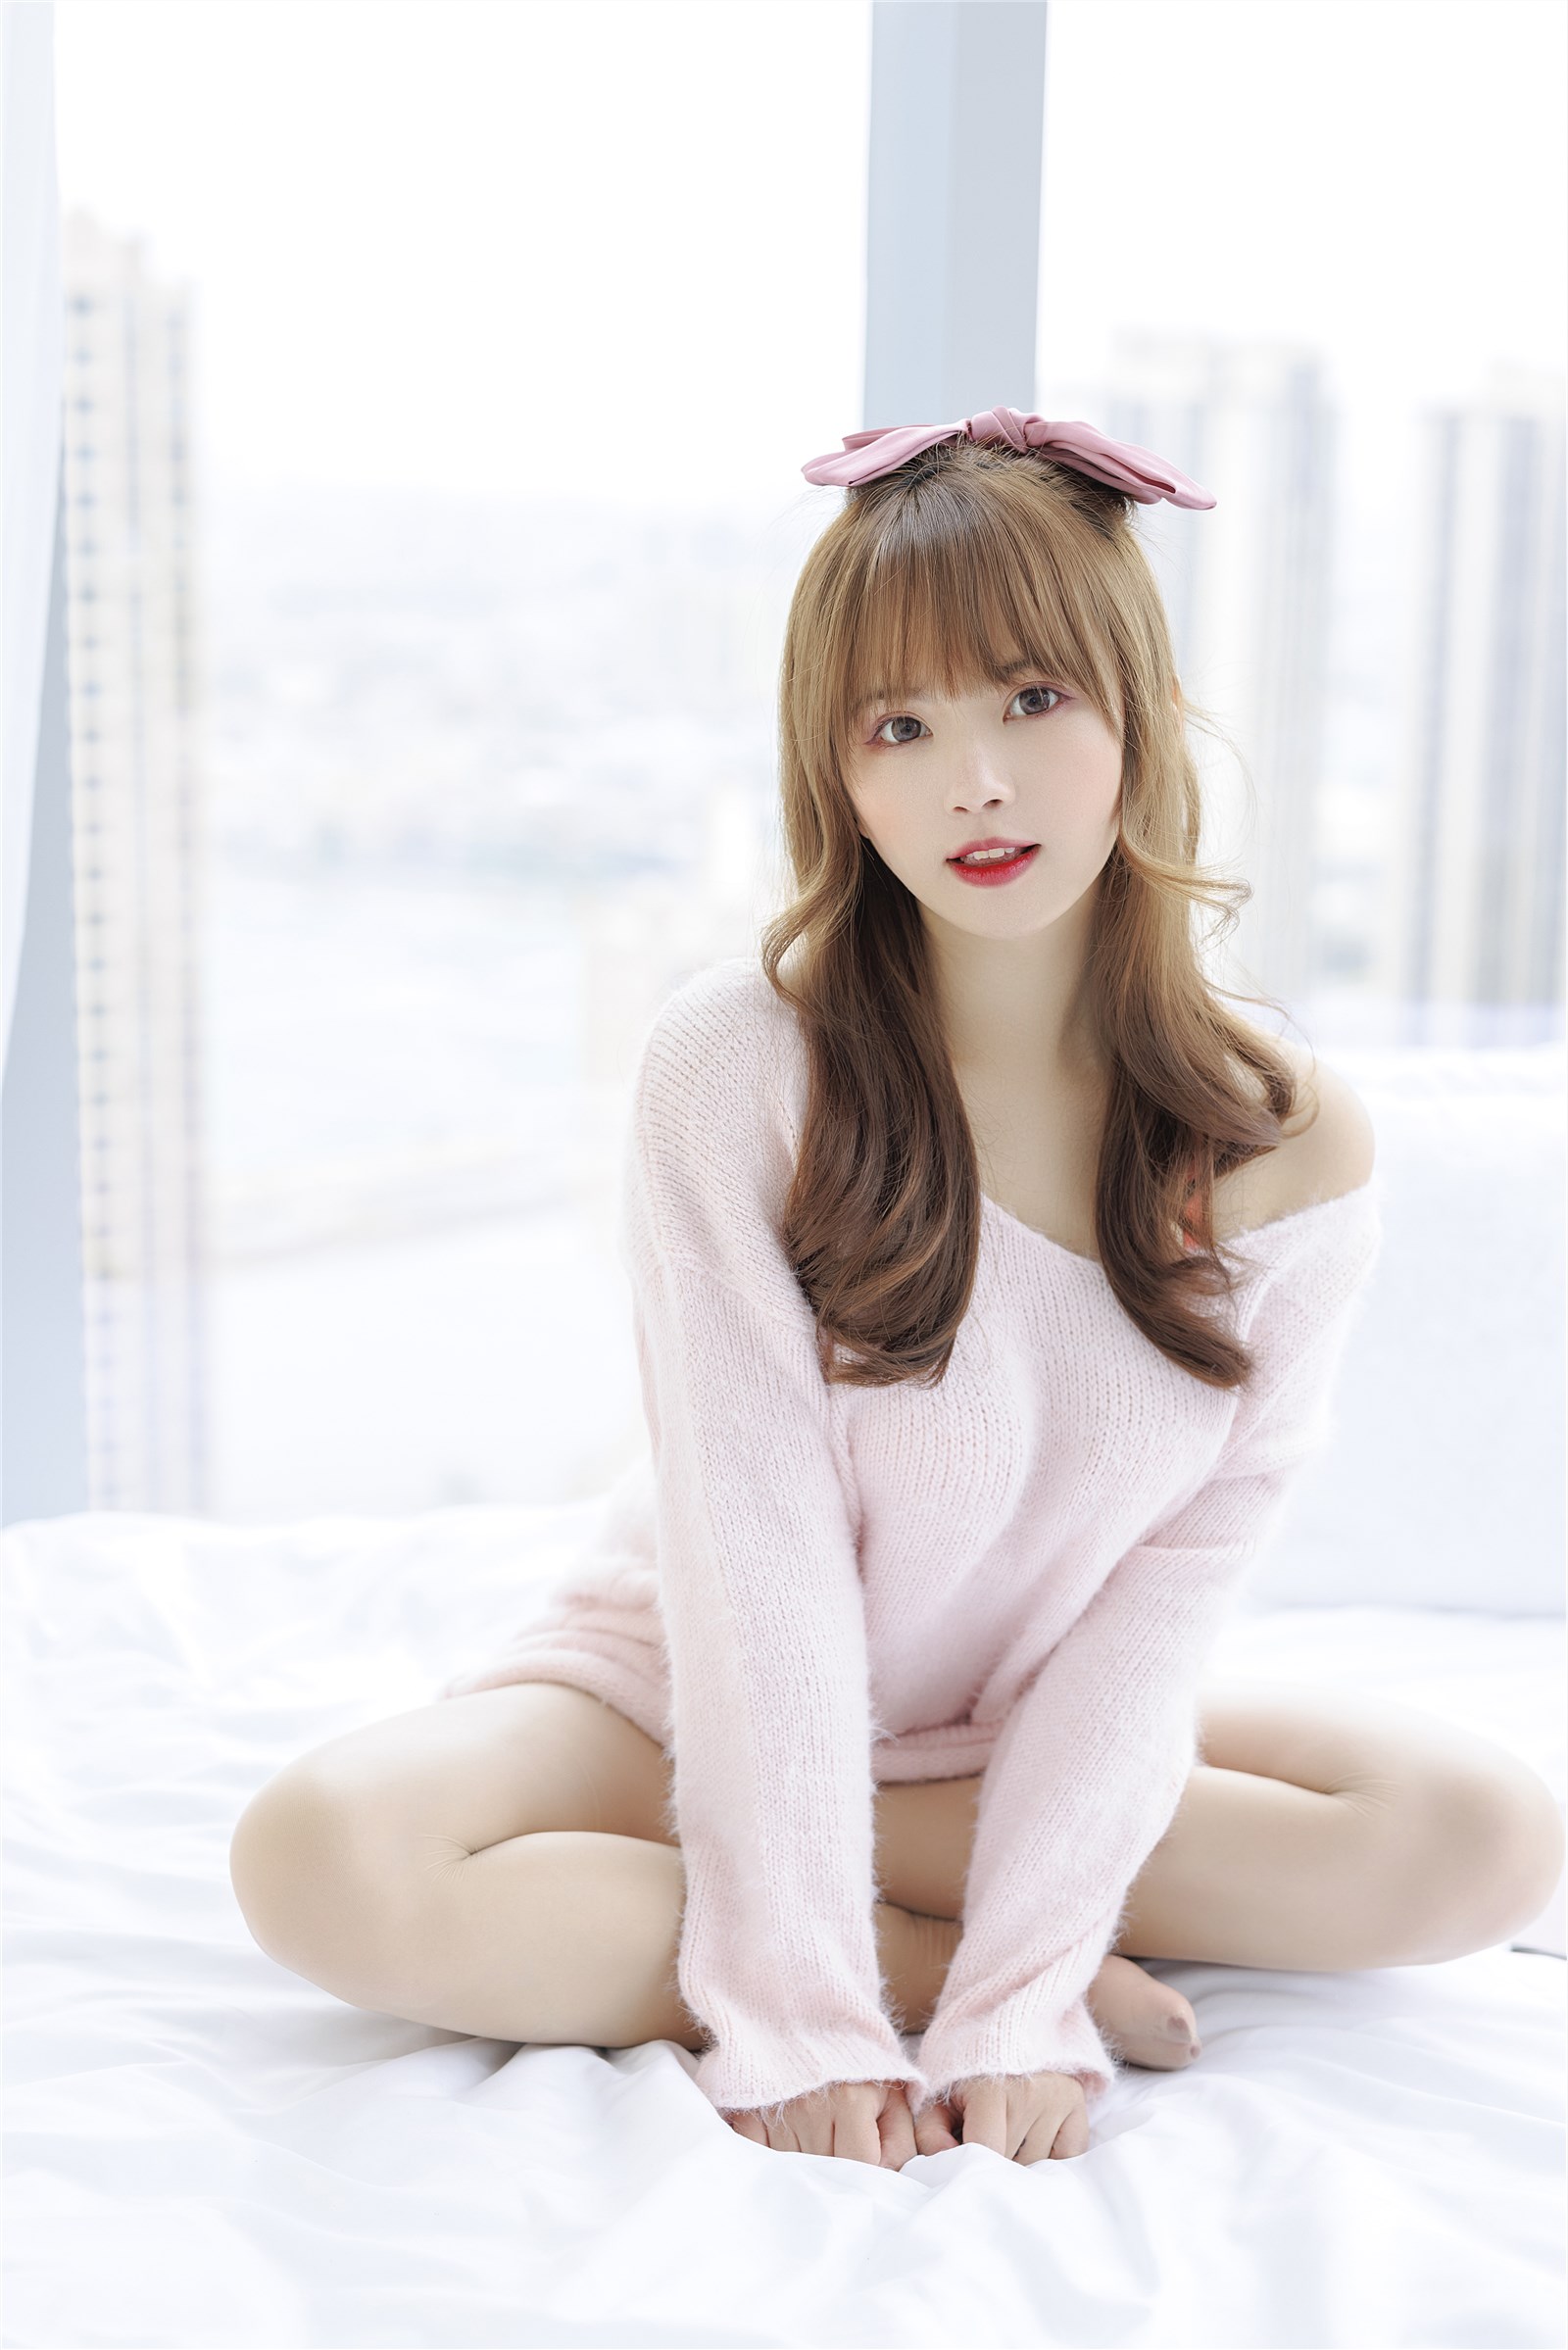 002. Zhang Siyun Nice - Internal purchase of watermark free pink sweater(1)